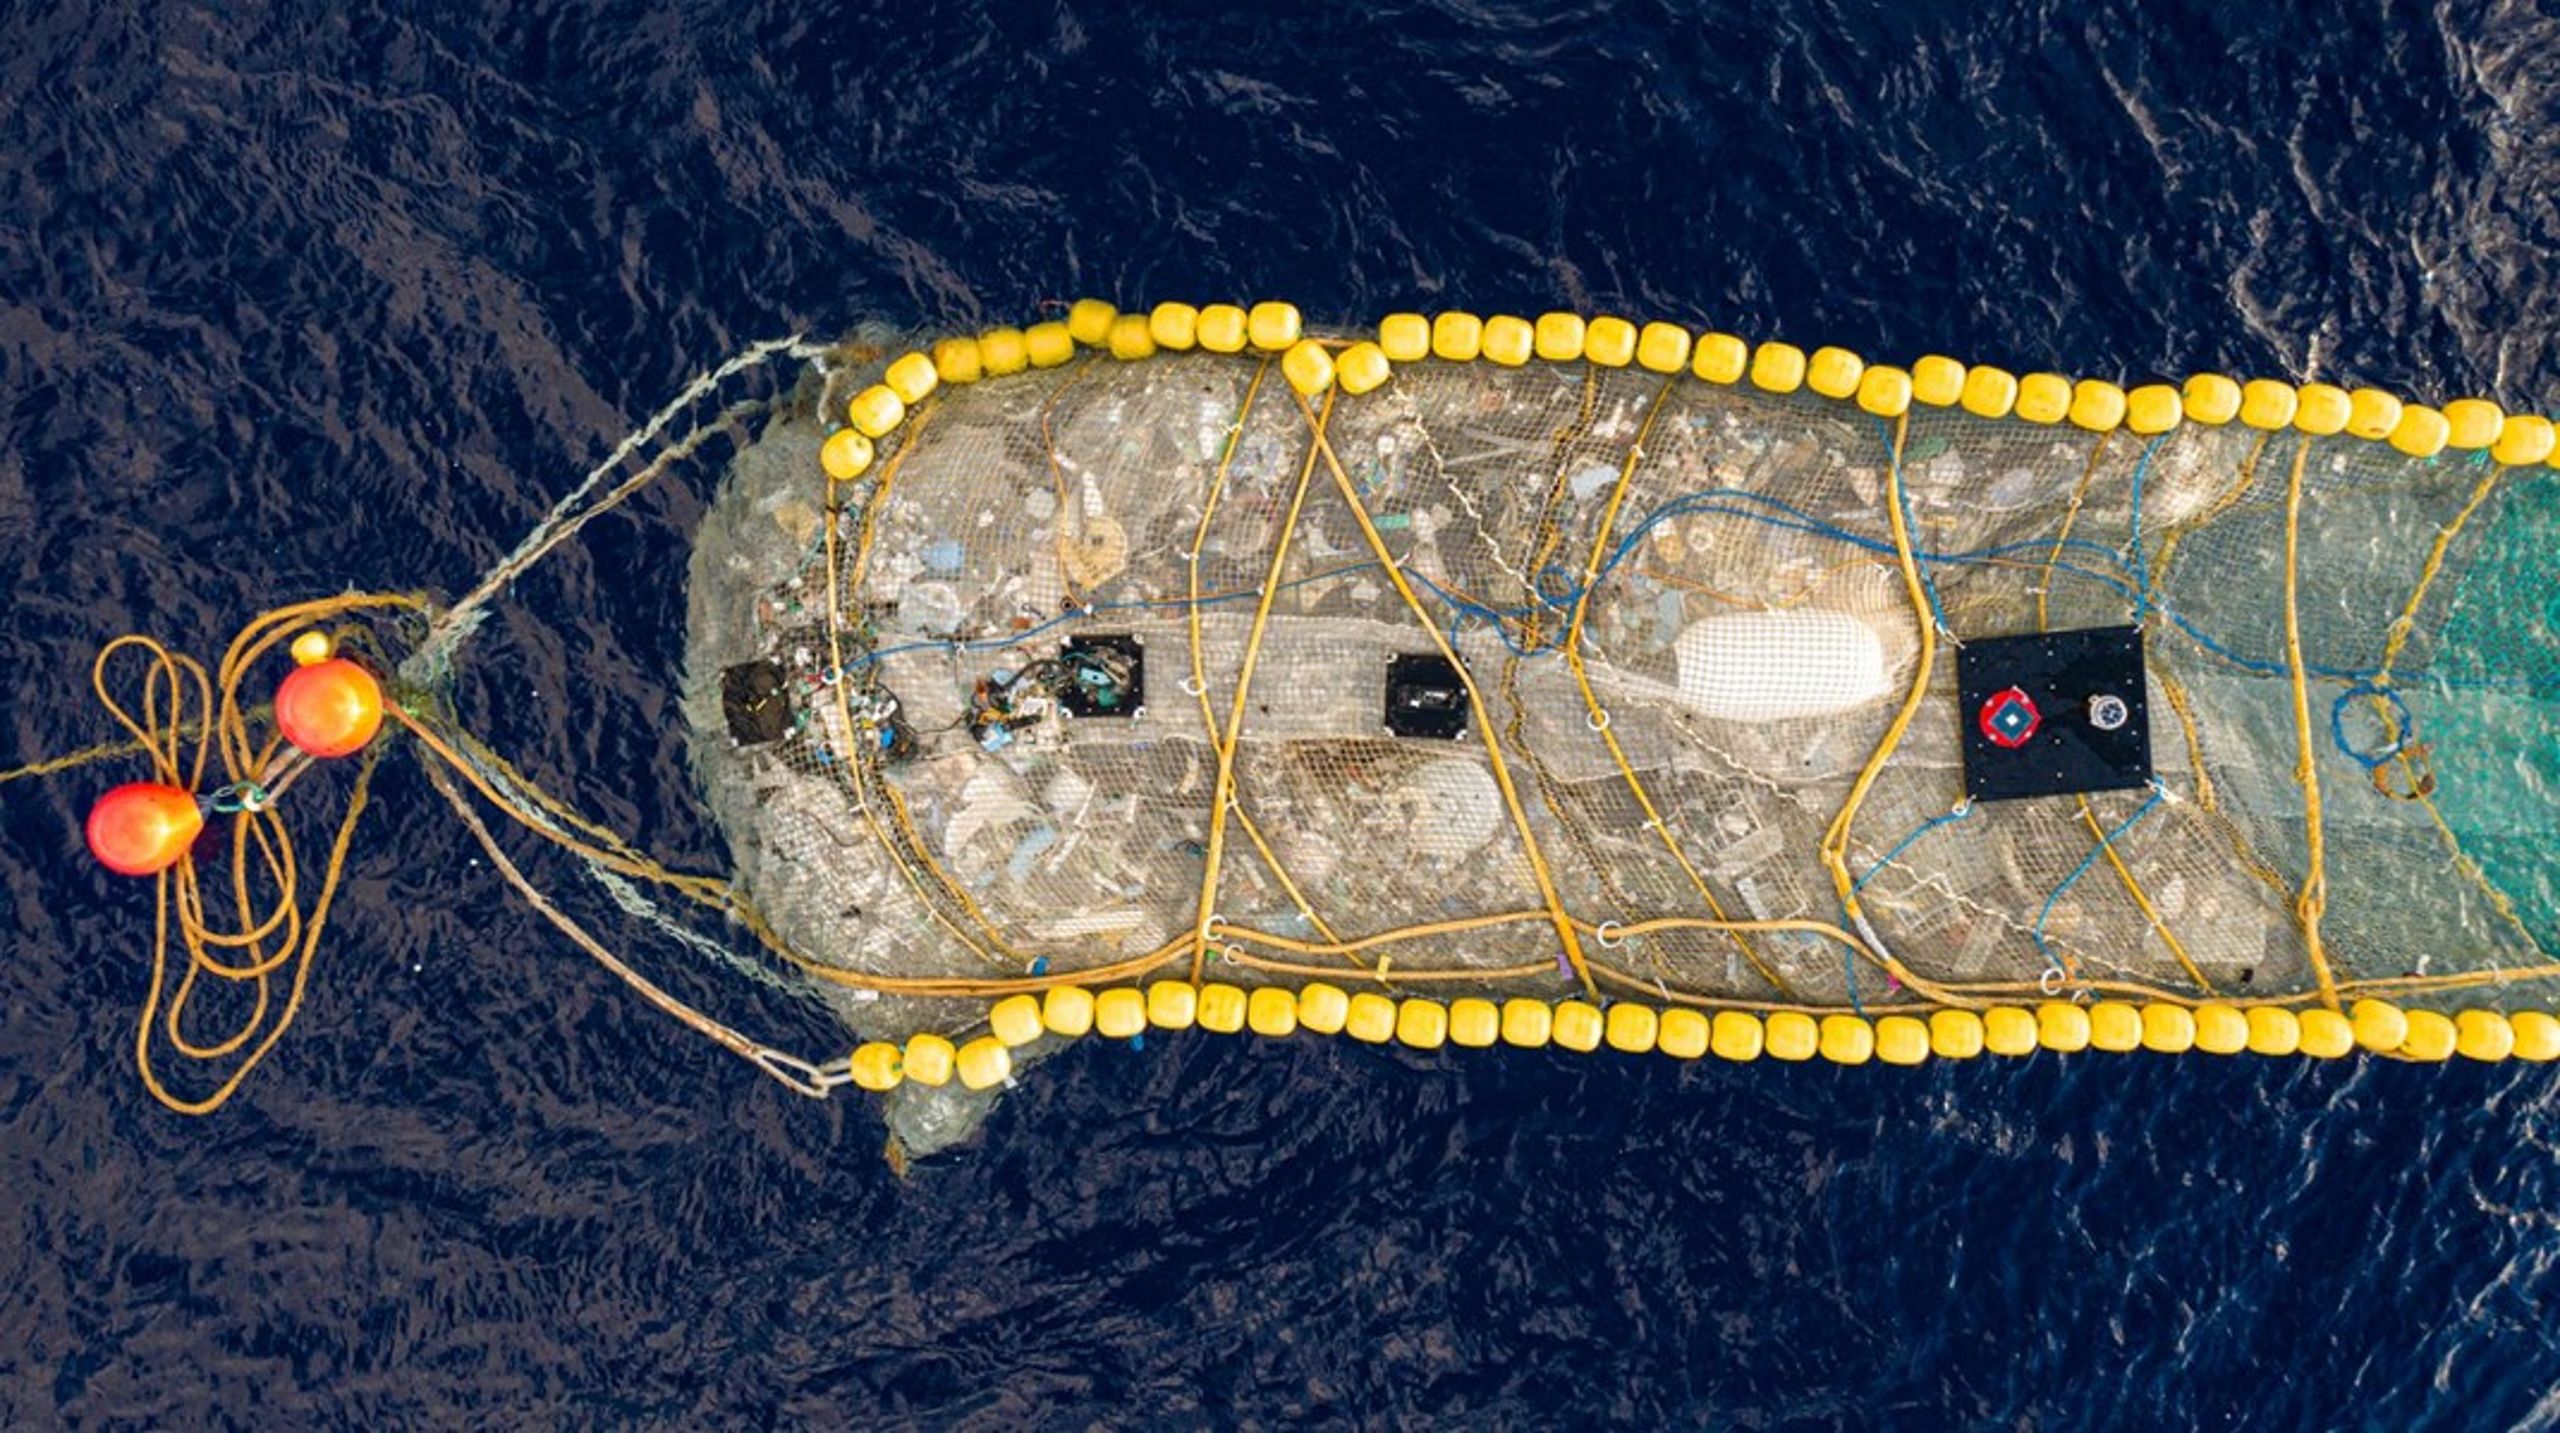 Nogle affaldsløsninger, som the Ocean Cleanup Project, der har sat sig for at rense Stillehavet for plastik, får meget medieopmærksomhed. Nikolaj Magne Larsen vil gerne slå et slag for, at&nbsp;vi ikke kun fokuserer på de affaldsstrømme, der er oppe i tiden.&nbsp;